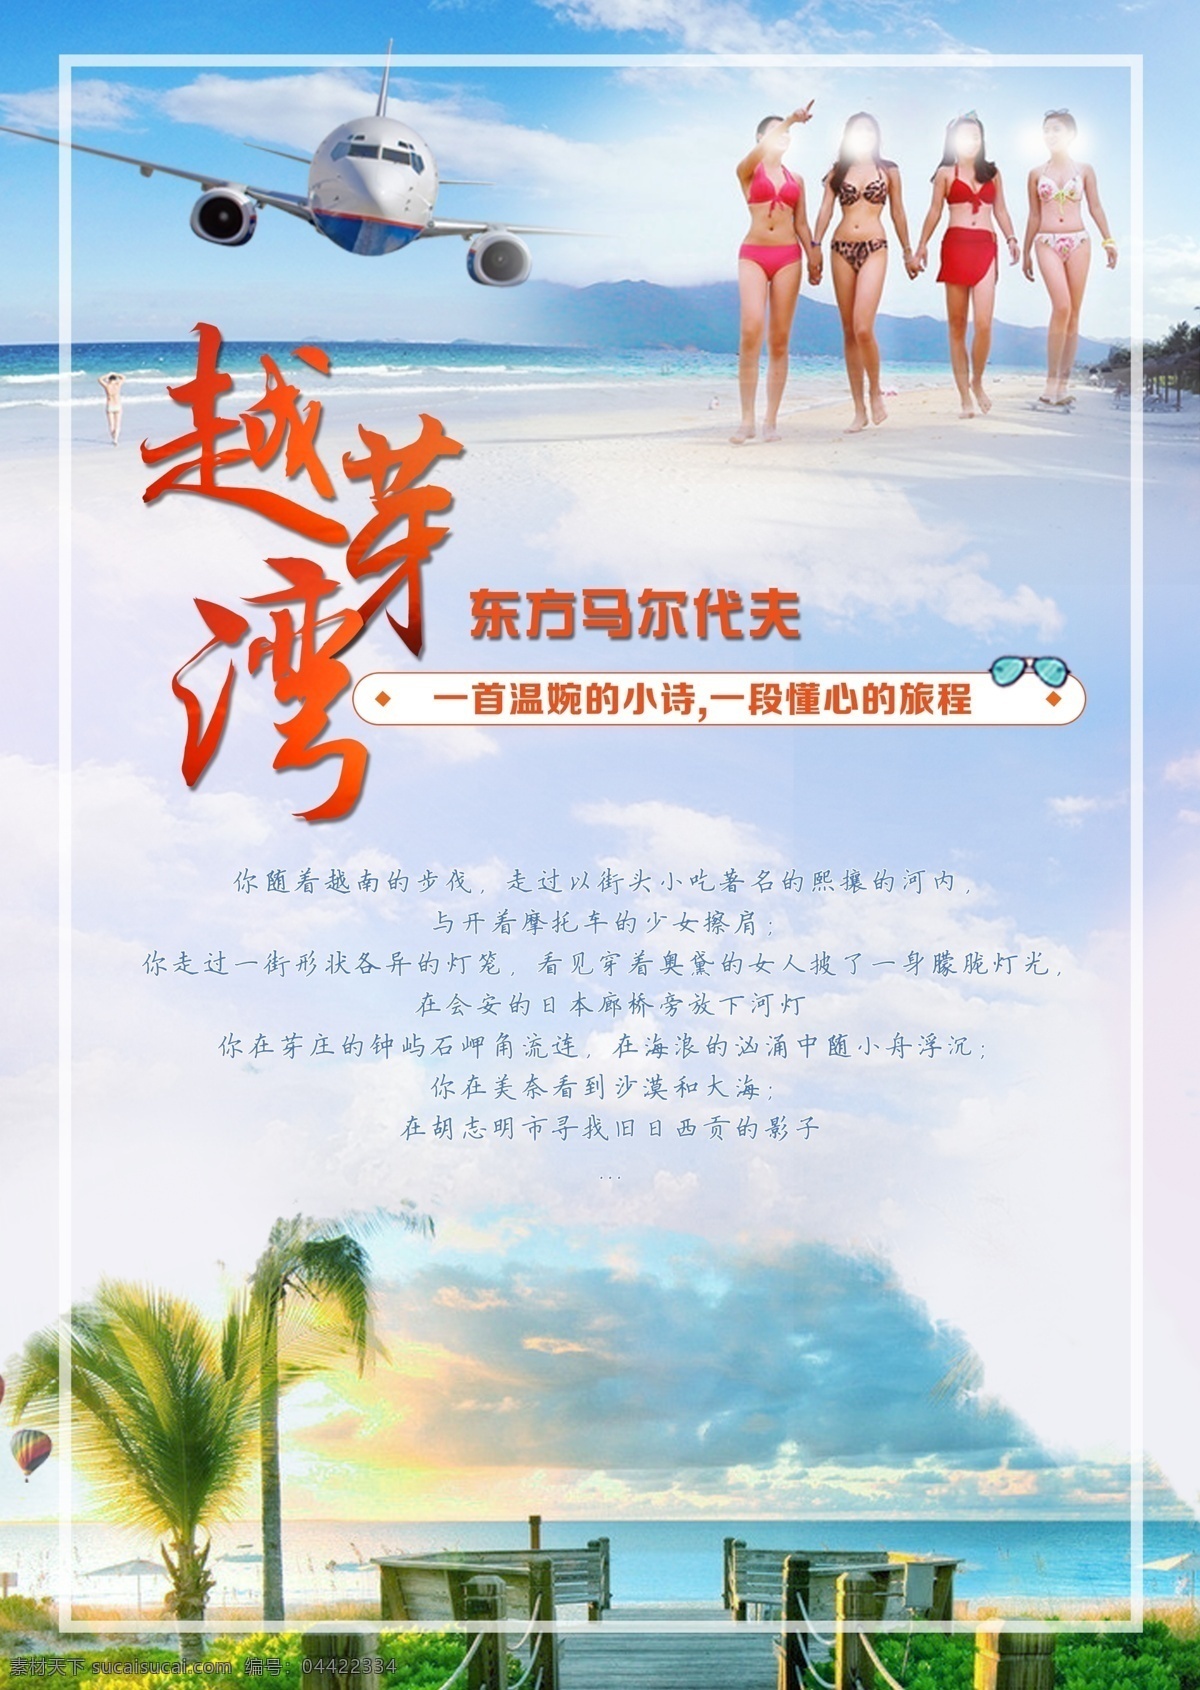 越 芽 湾 旅游 越牙湾 越南 东南亚 广告 海报 文艺 美女 海岛